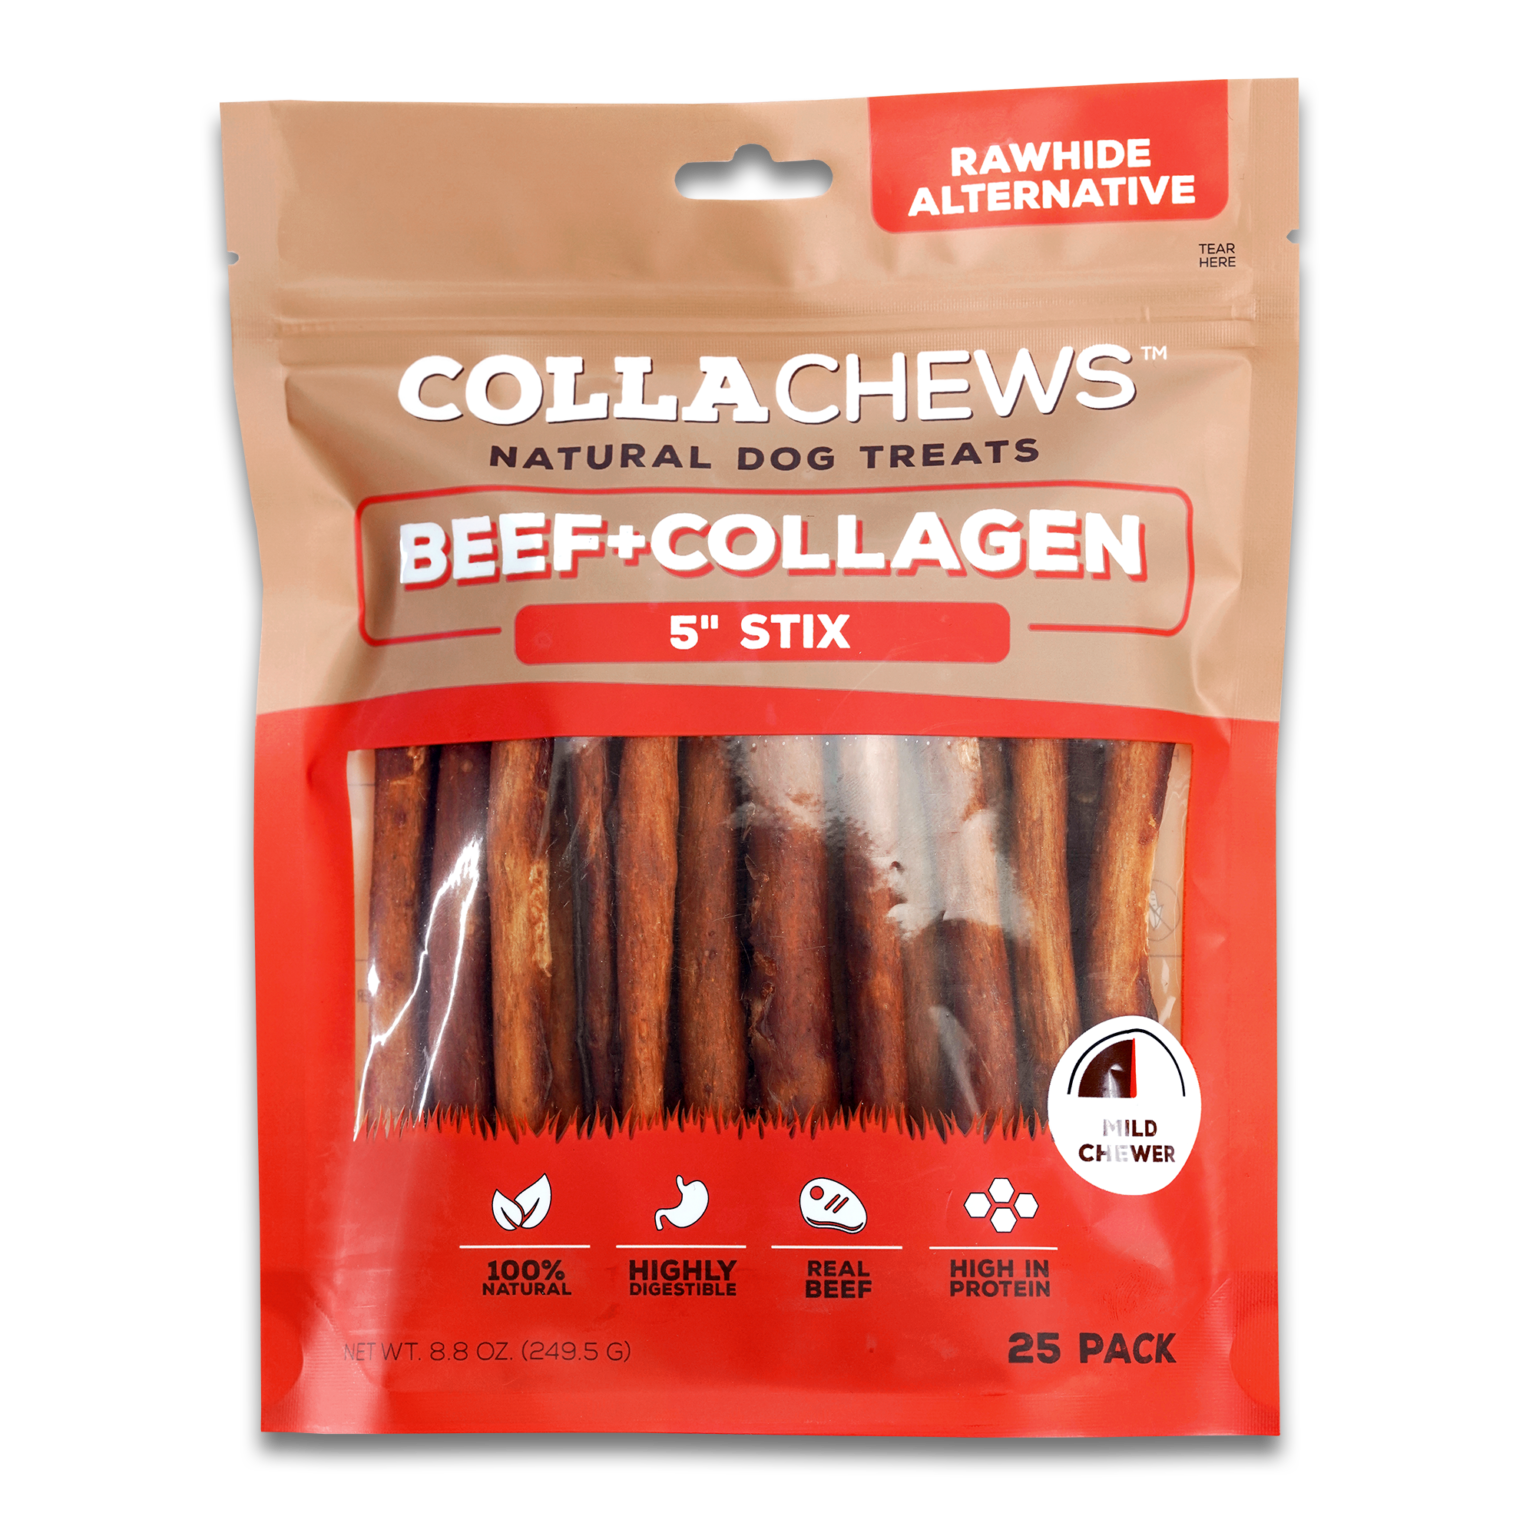 CollaChews Beef + Collagen 5" stix